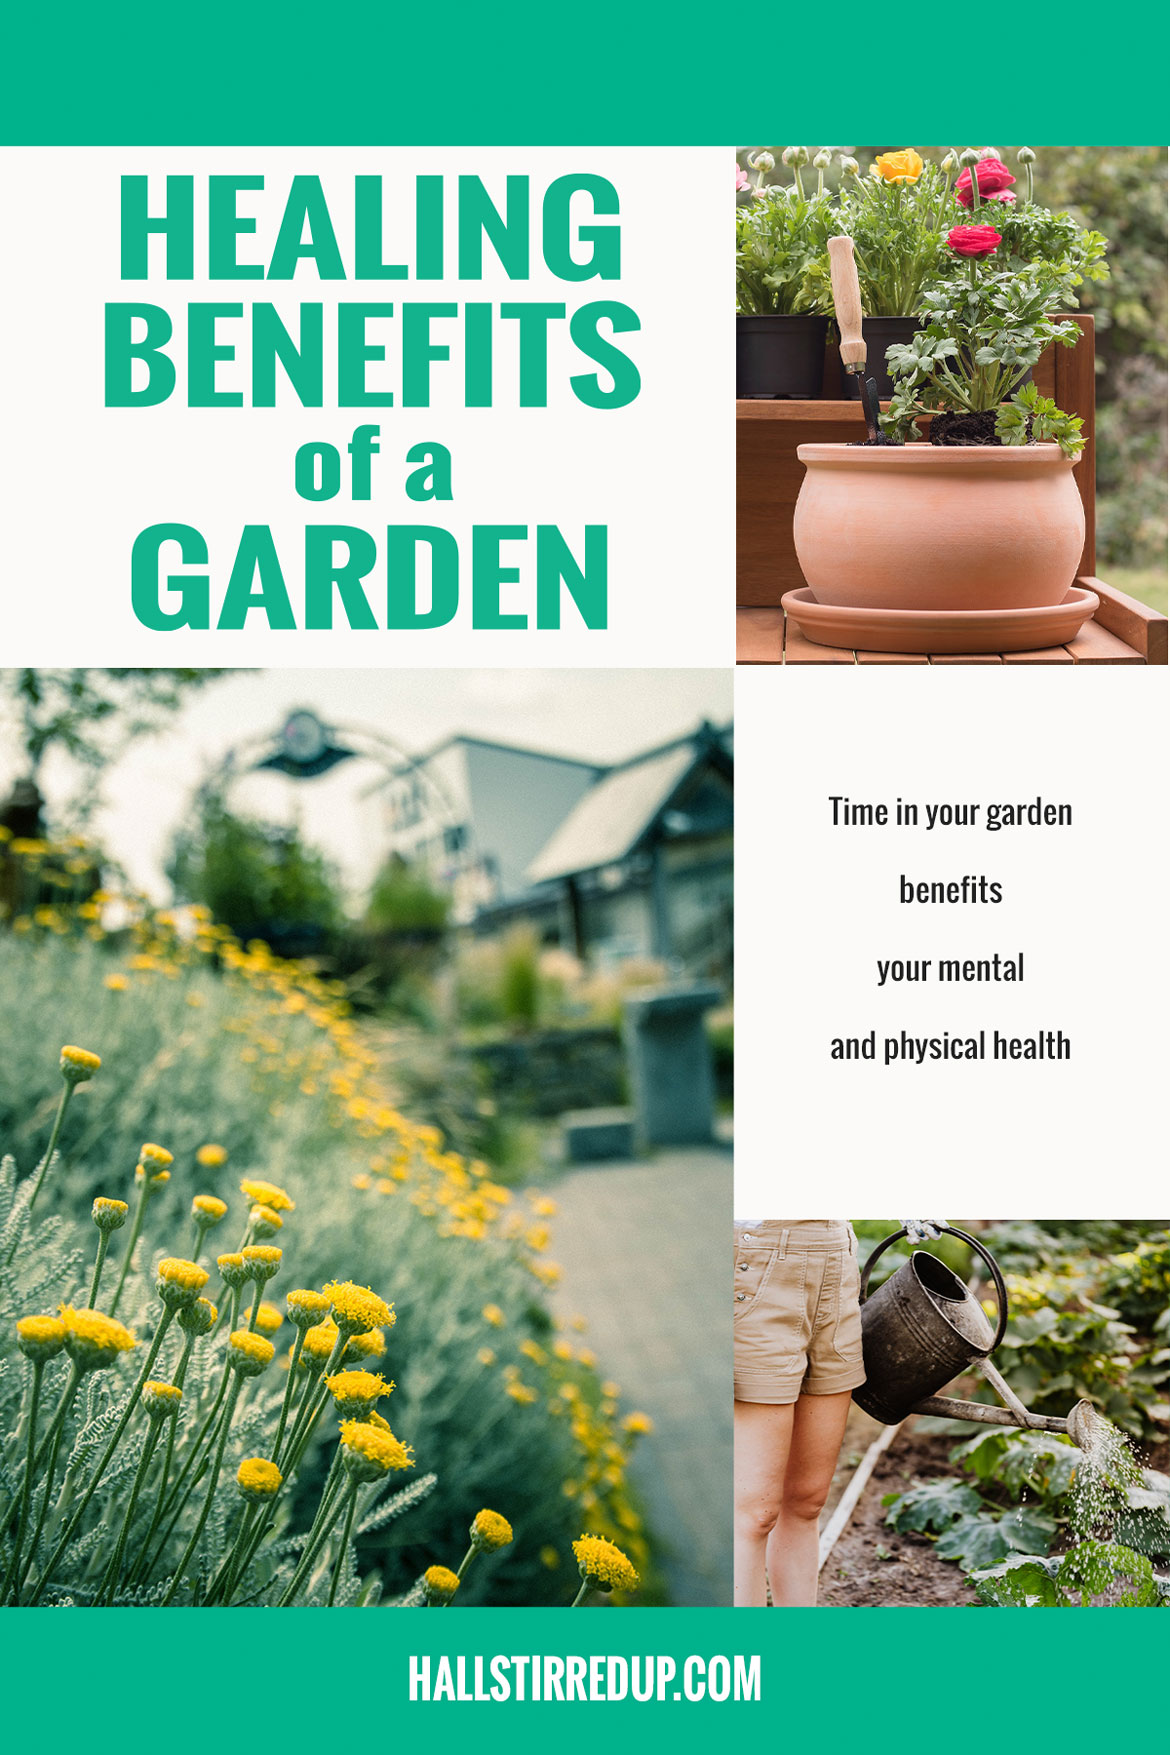 Healing benefits of a garden